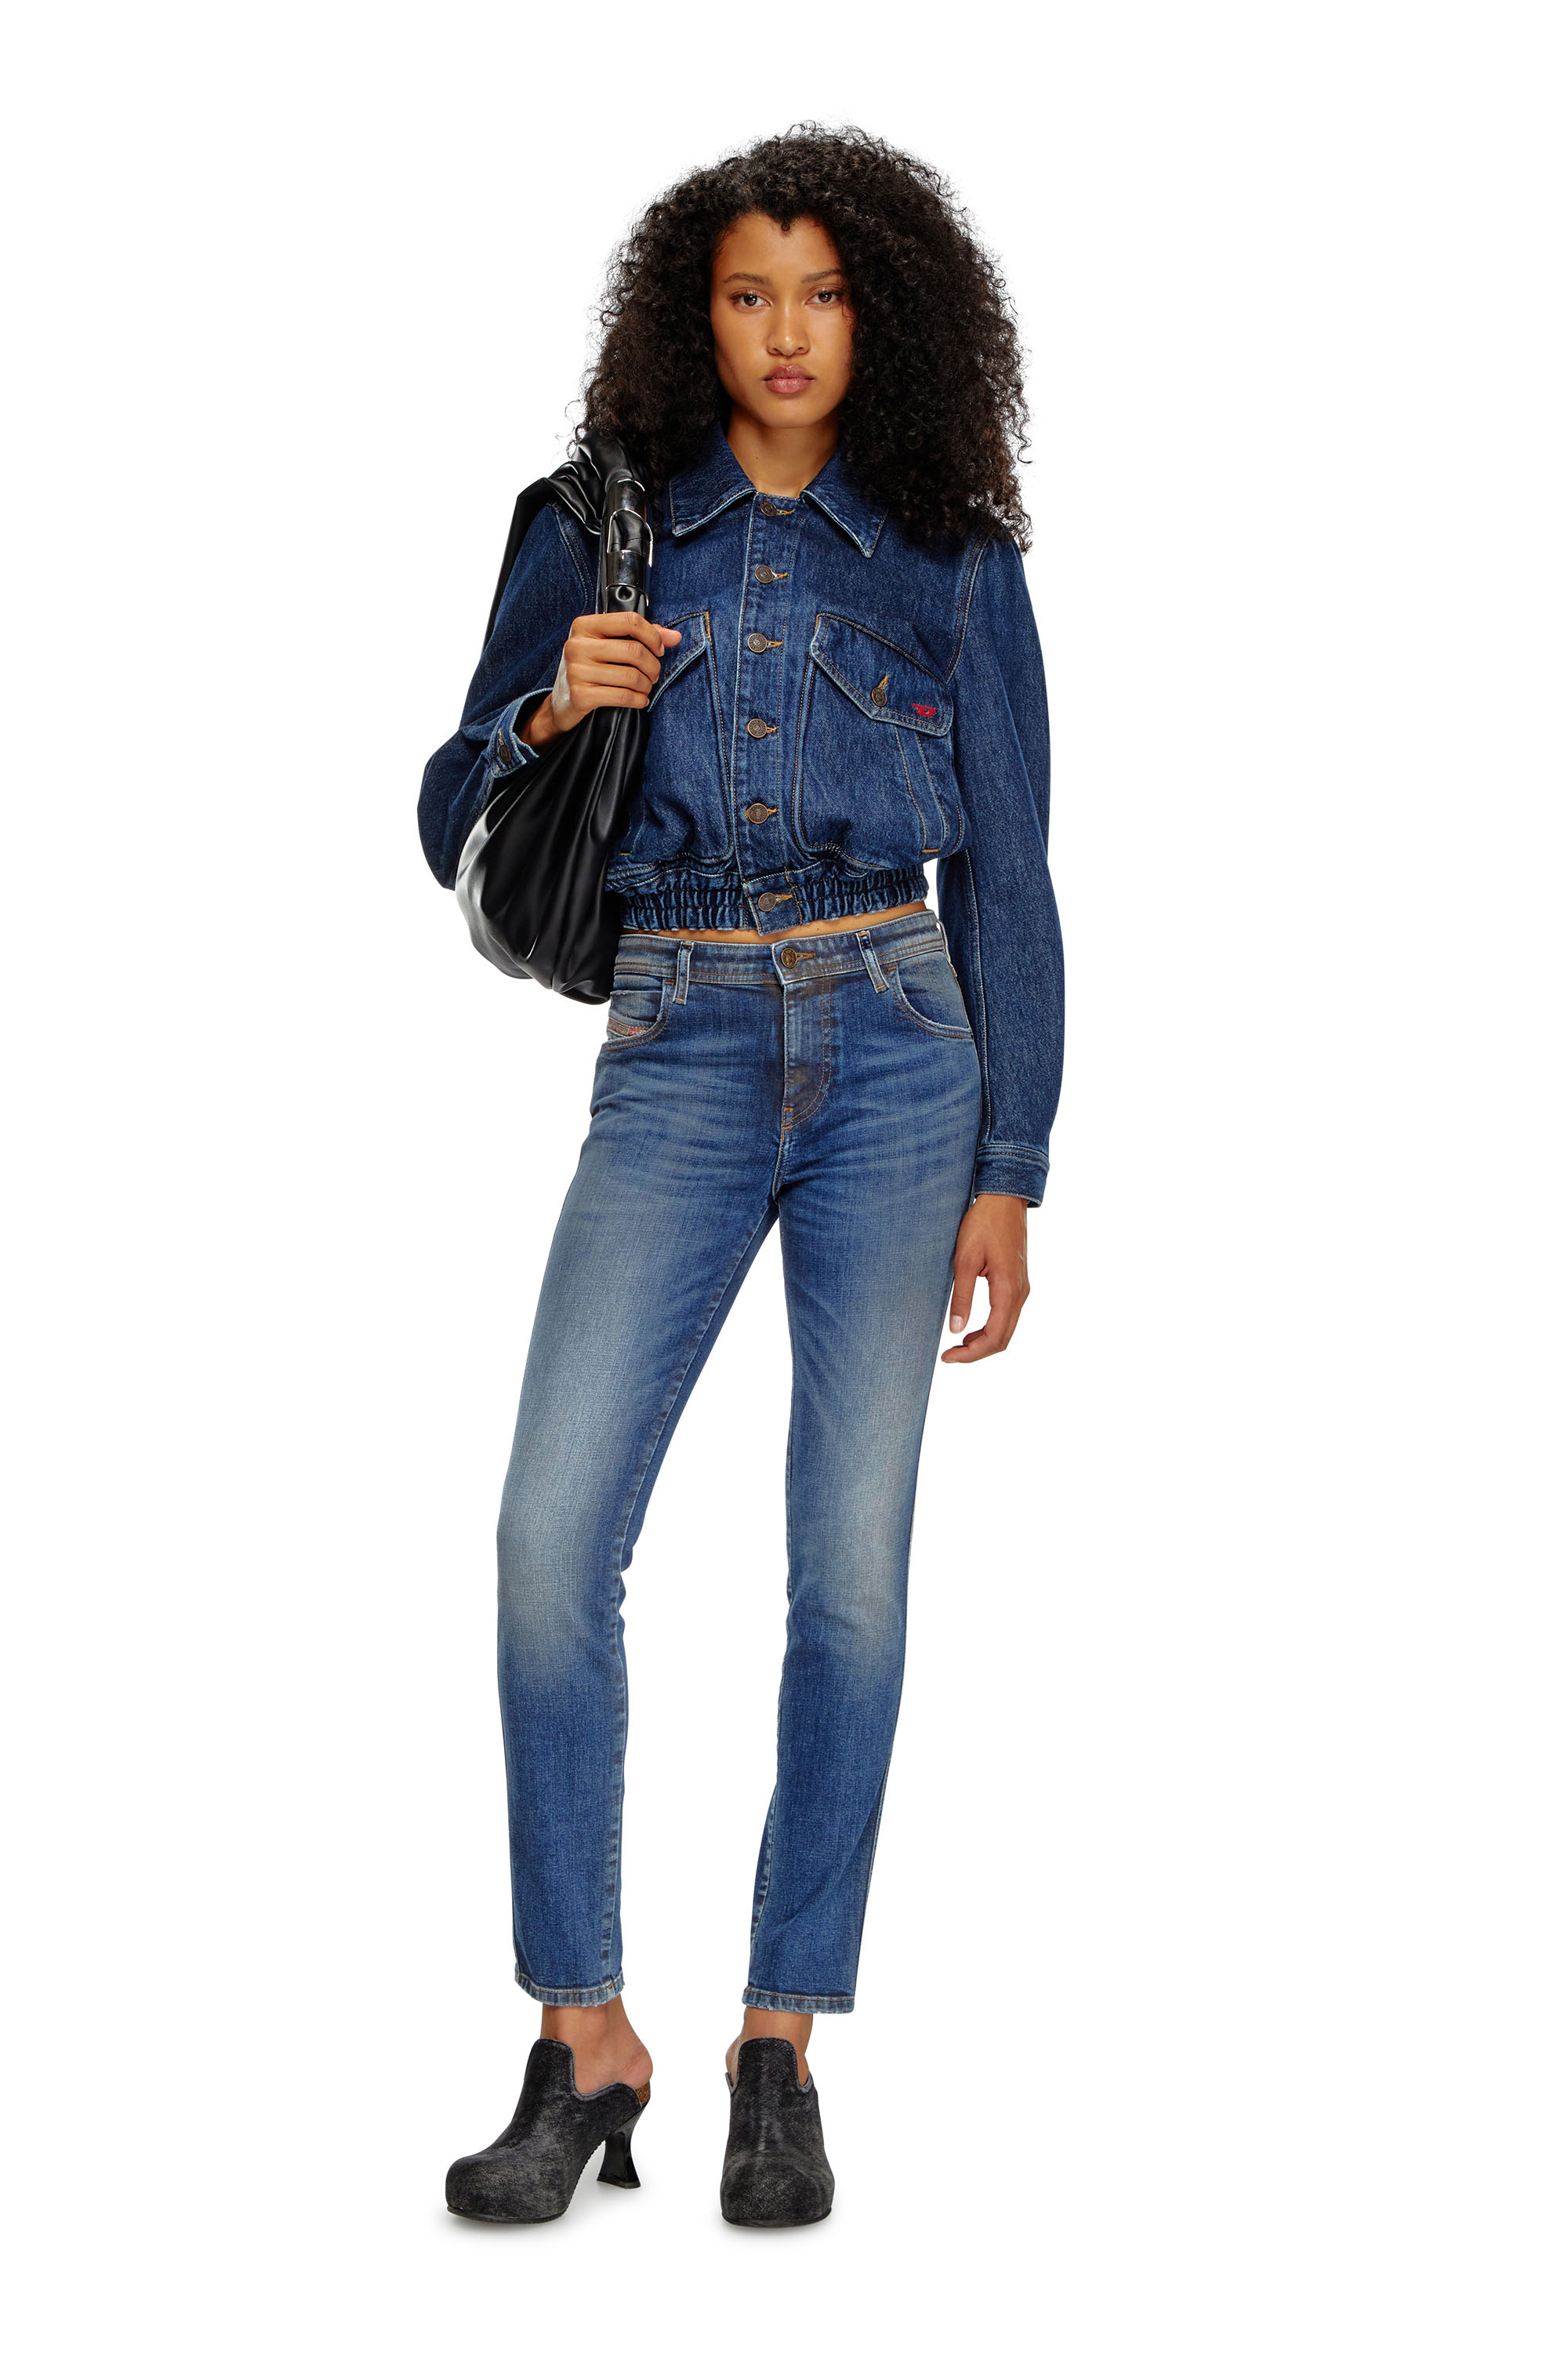 Diesel - Skinny Jeans 2015 Babhila 09J32, Mujer Skinny Jeans - 2015 Babhila in Azul marino - Image 2